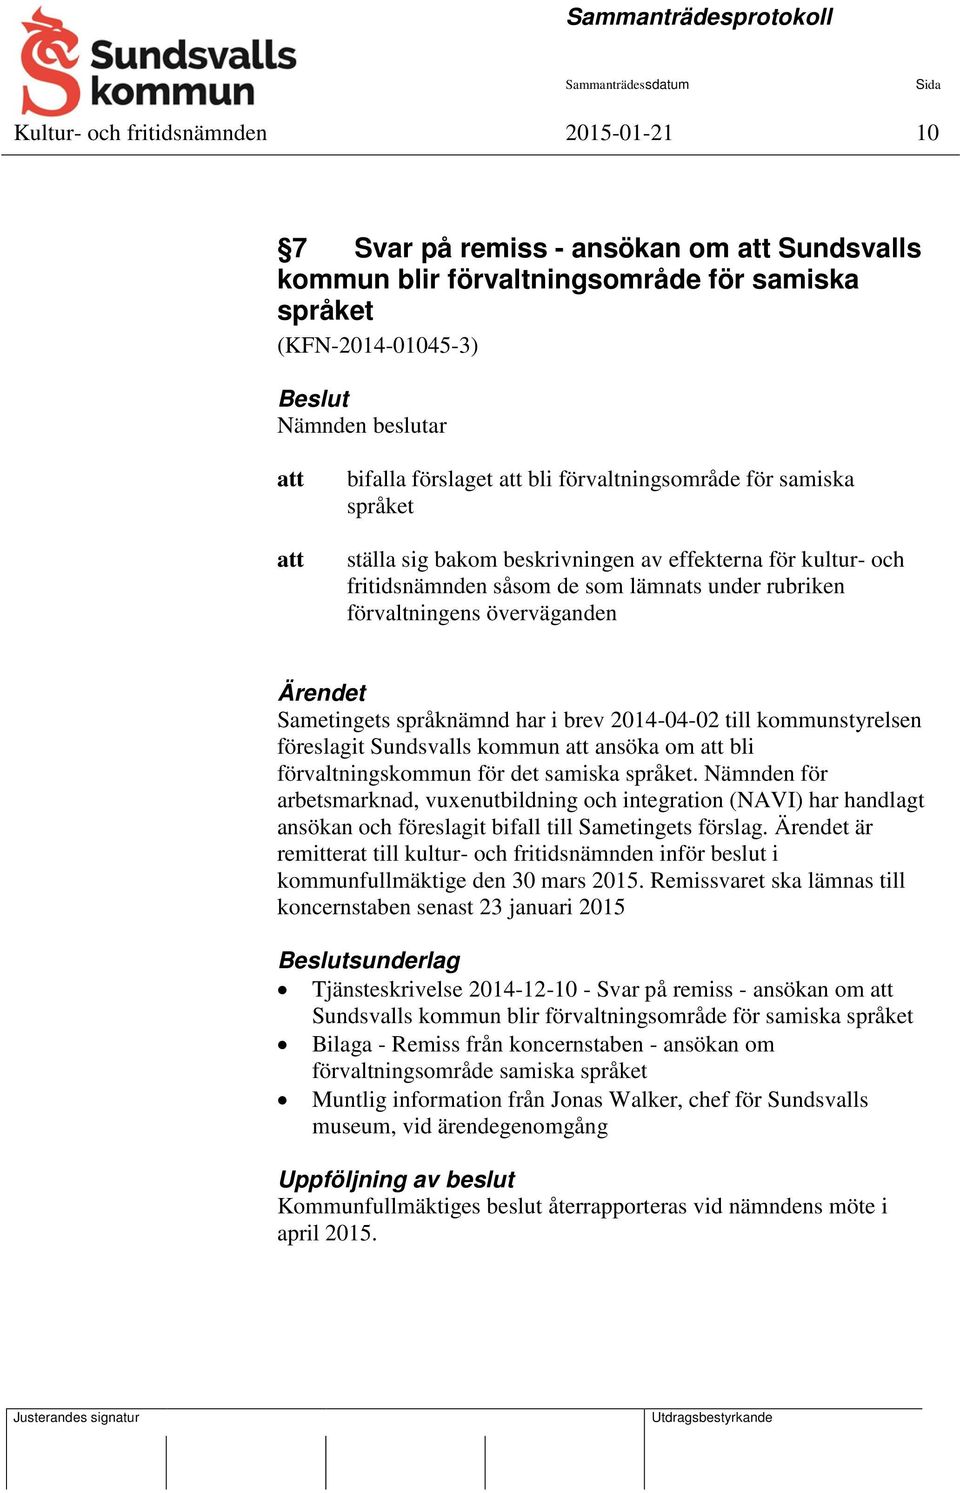 språknämnd har i brev 2014-04-02 till kommunstyrelsen föreslagit Sundsvalls kommun ansöka om bli förvaltningskommun för det samiska språket.